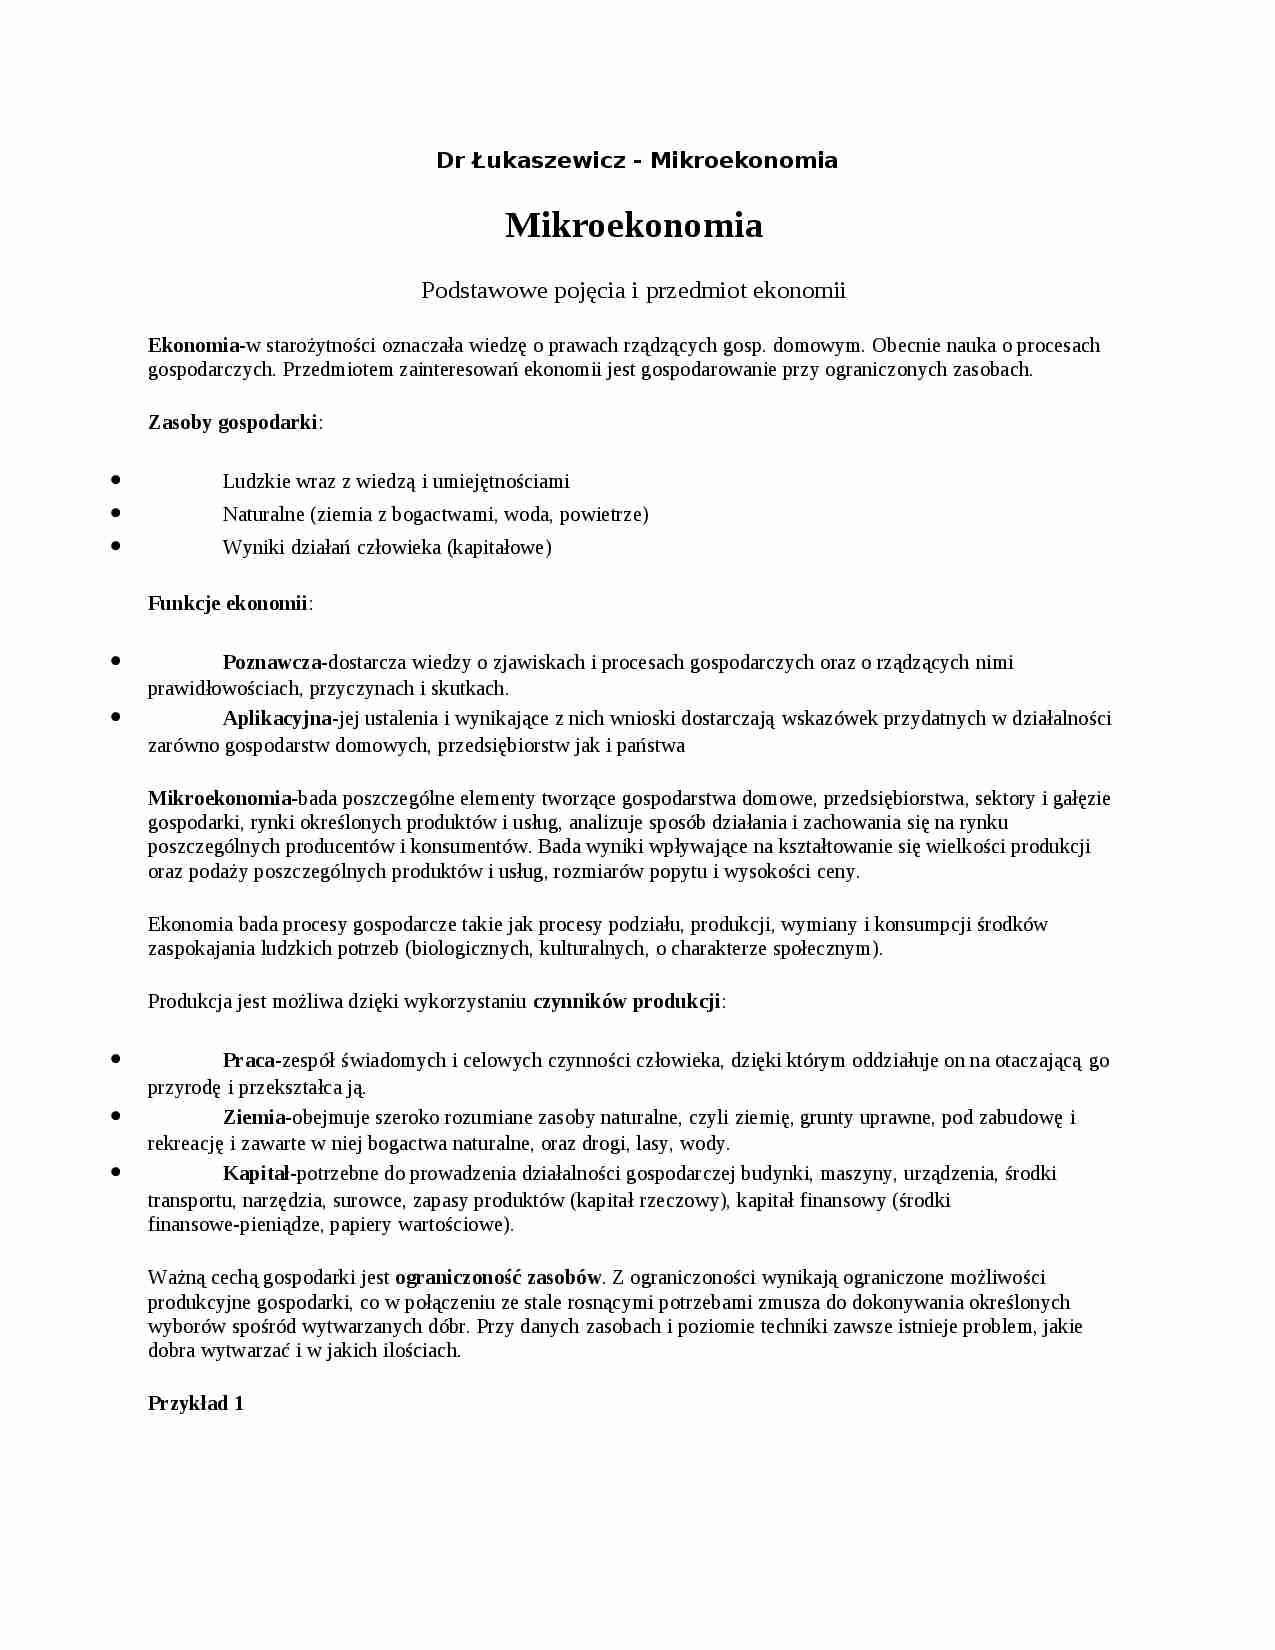  Mikroekonomia - omówienie  - strona 1